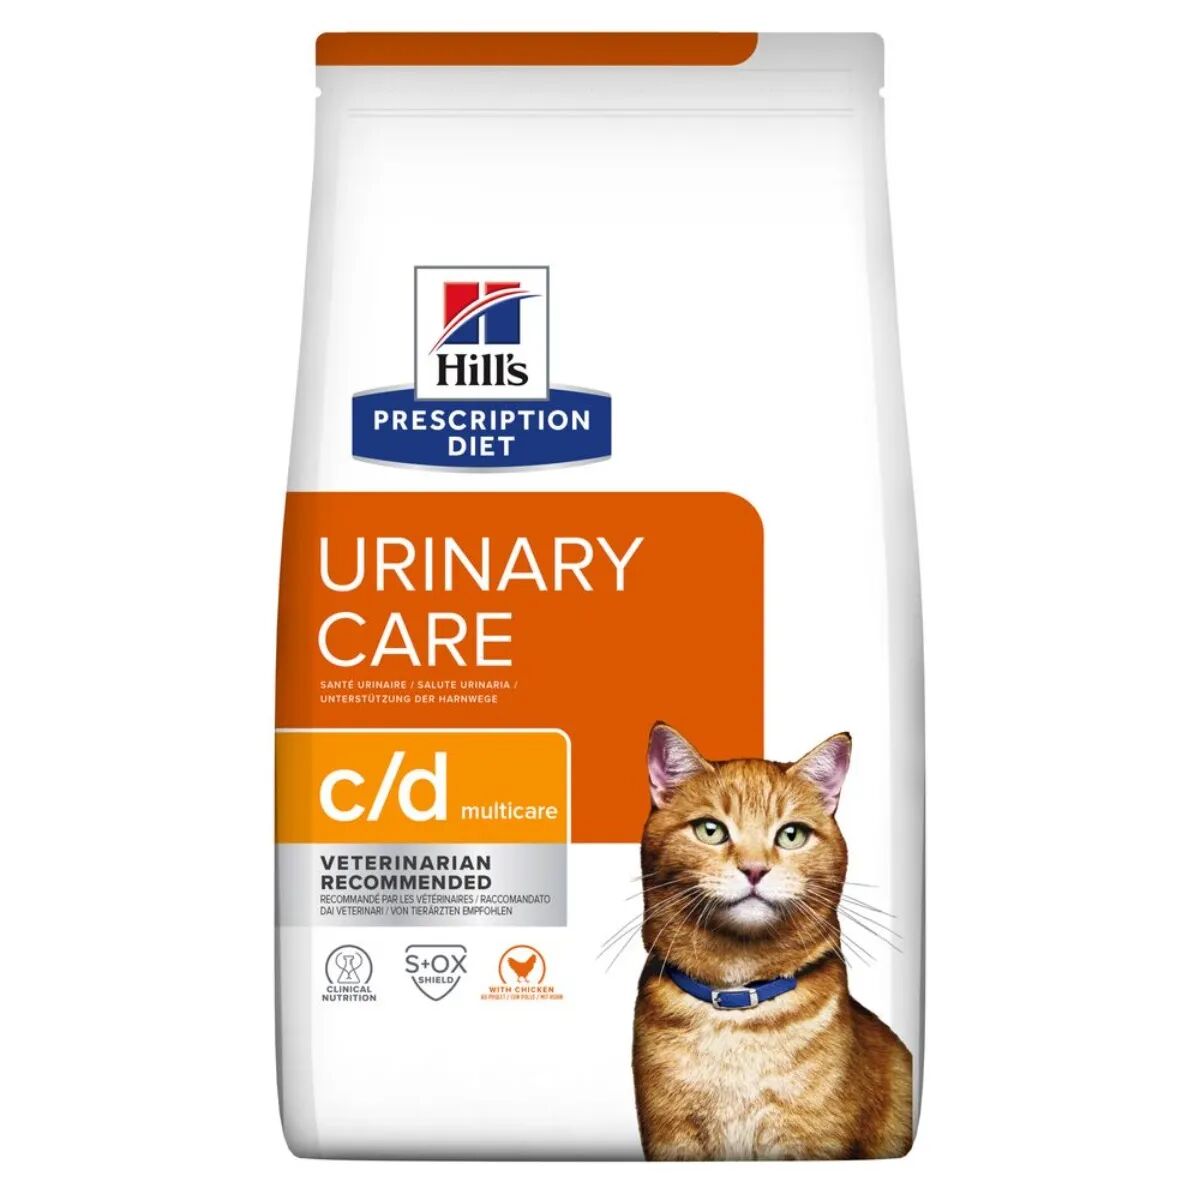 hills hill's prescription diet c/d urinary care multicare alimento secco per gatti 400g